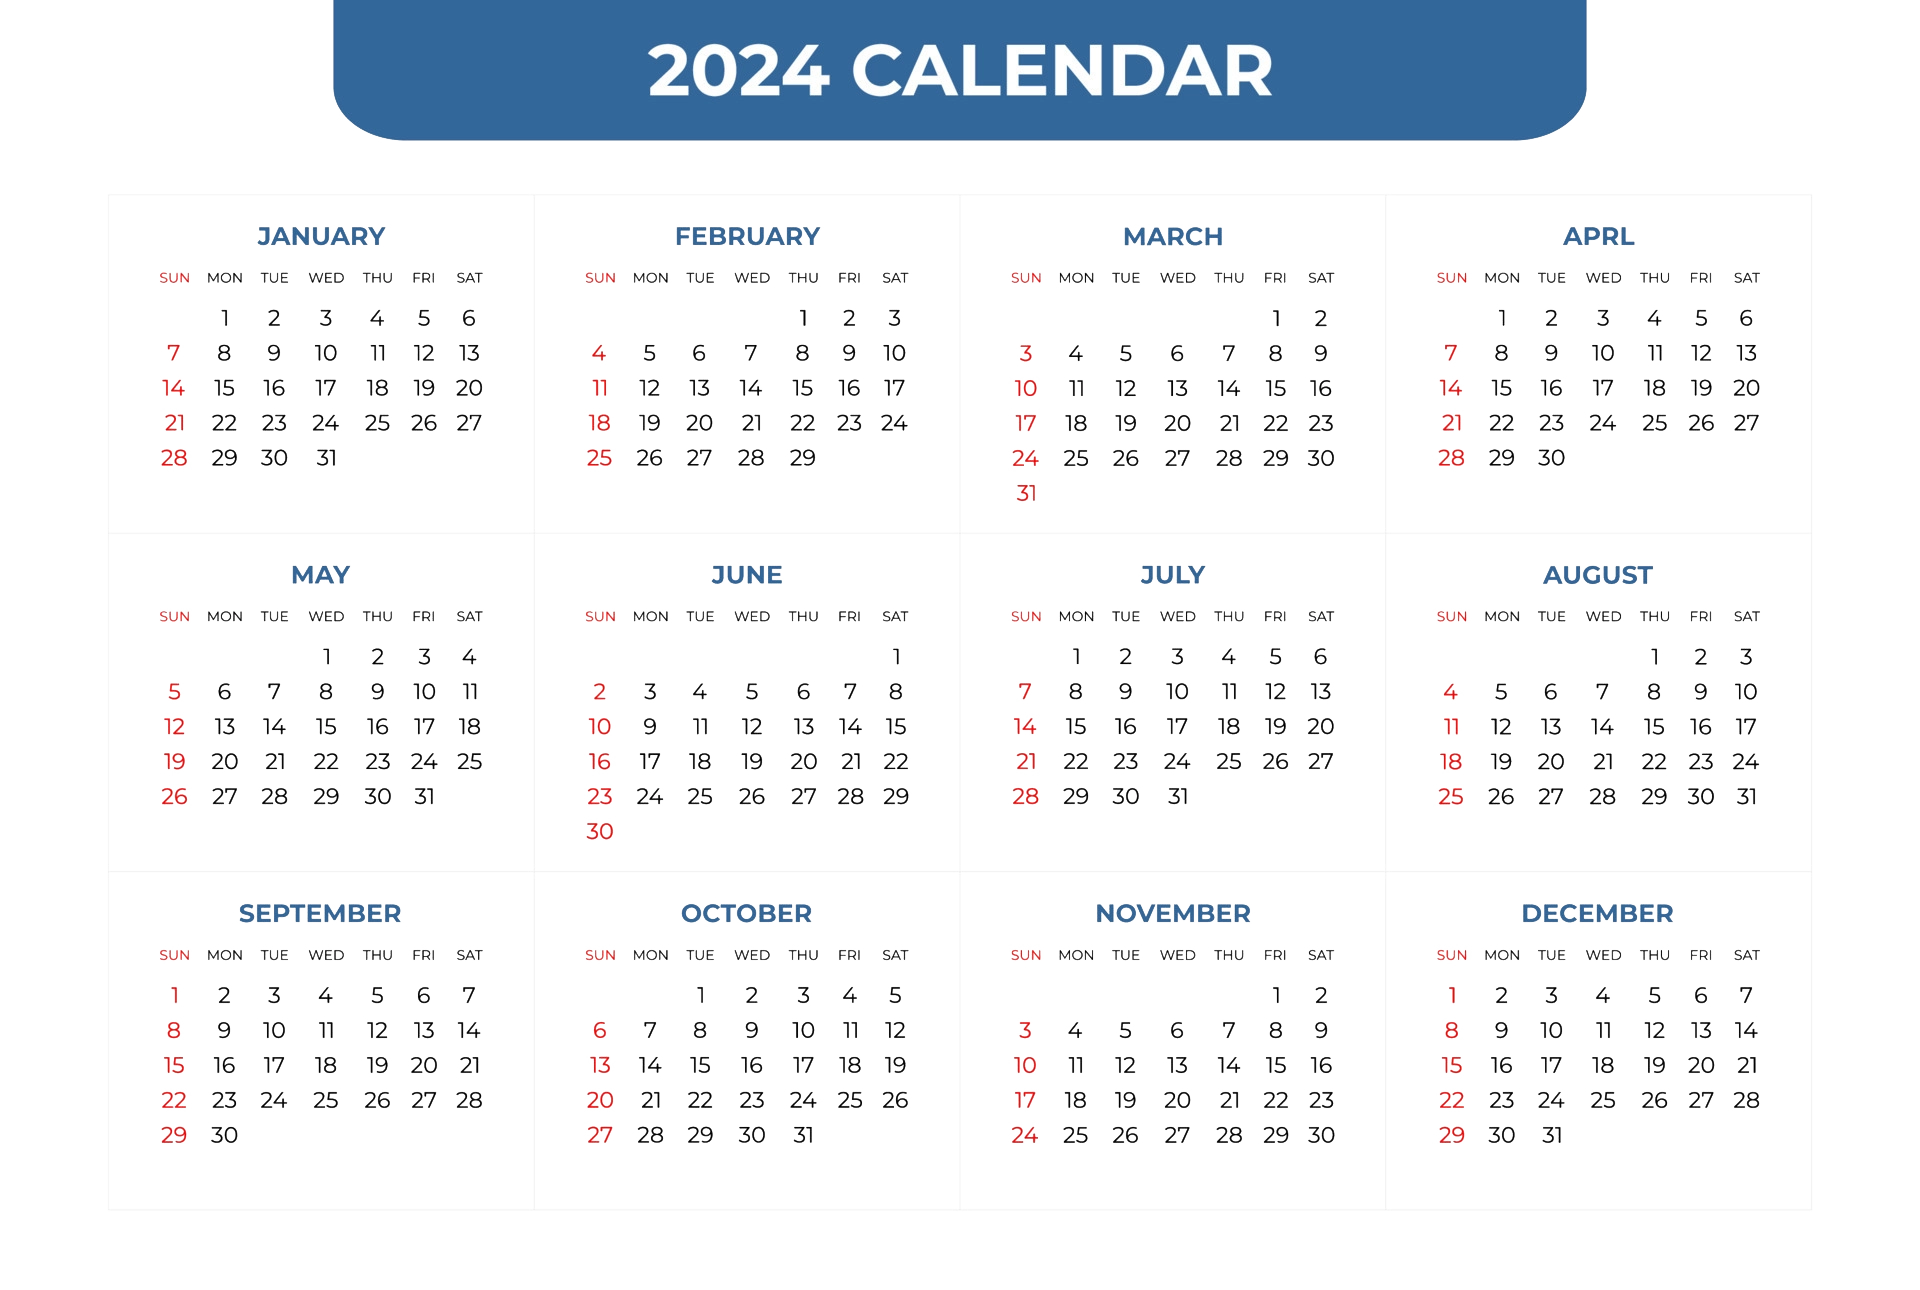 Календарь 2024 в ворде. Календарь 2024. Календарь 2024 года. Календарь на 2024 год посмотреть. Бухгалтерский календарь 2024.